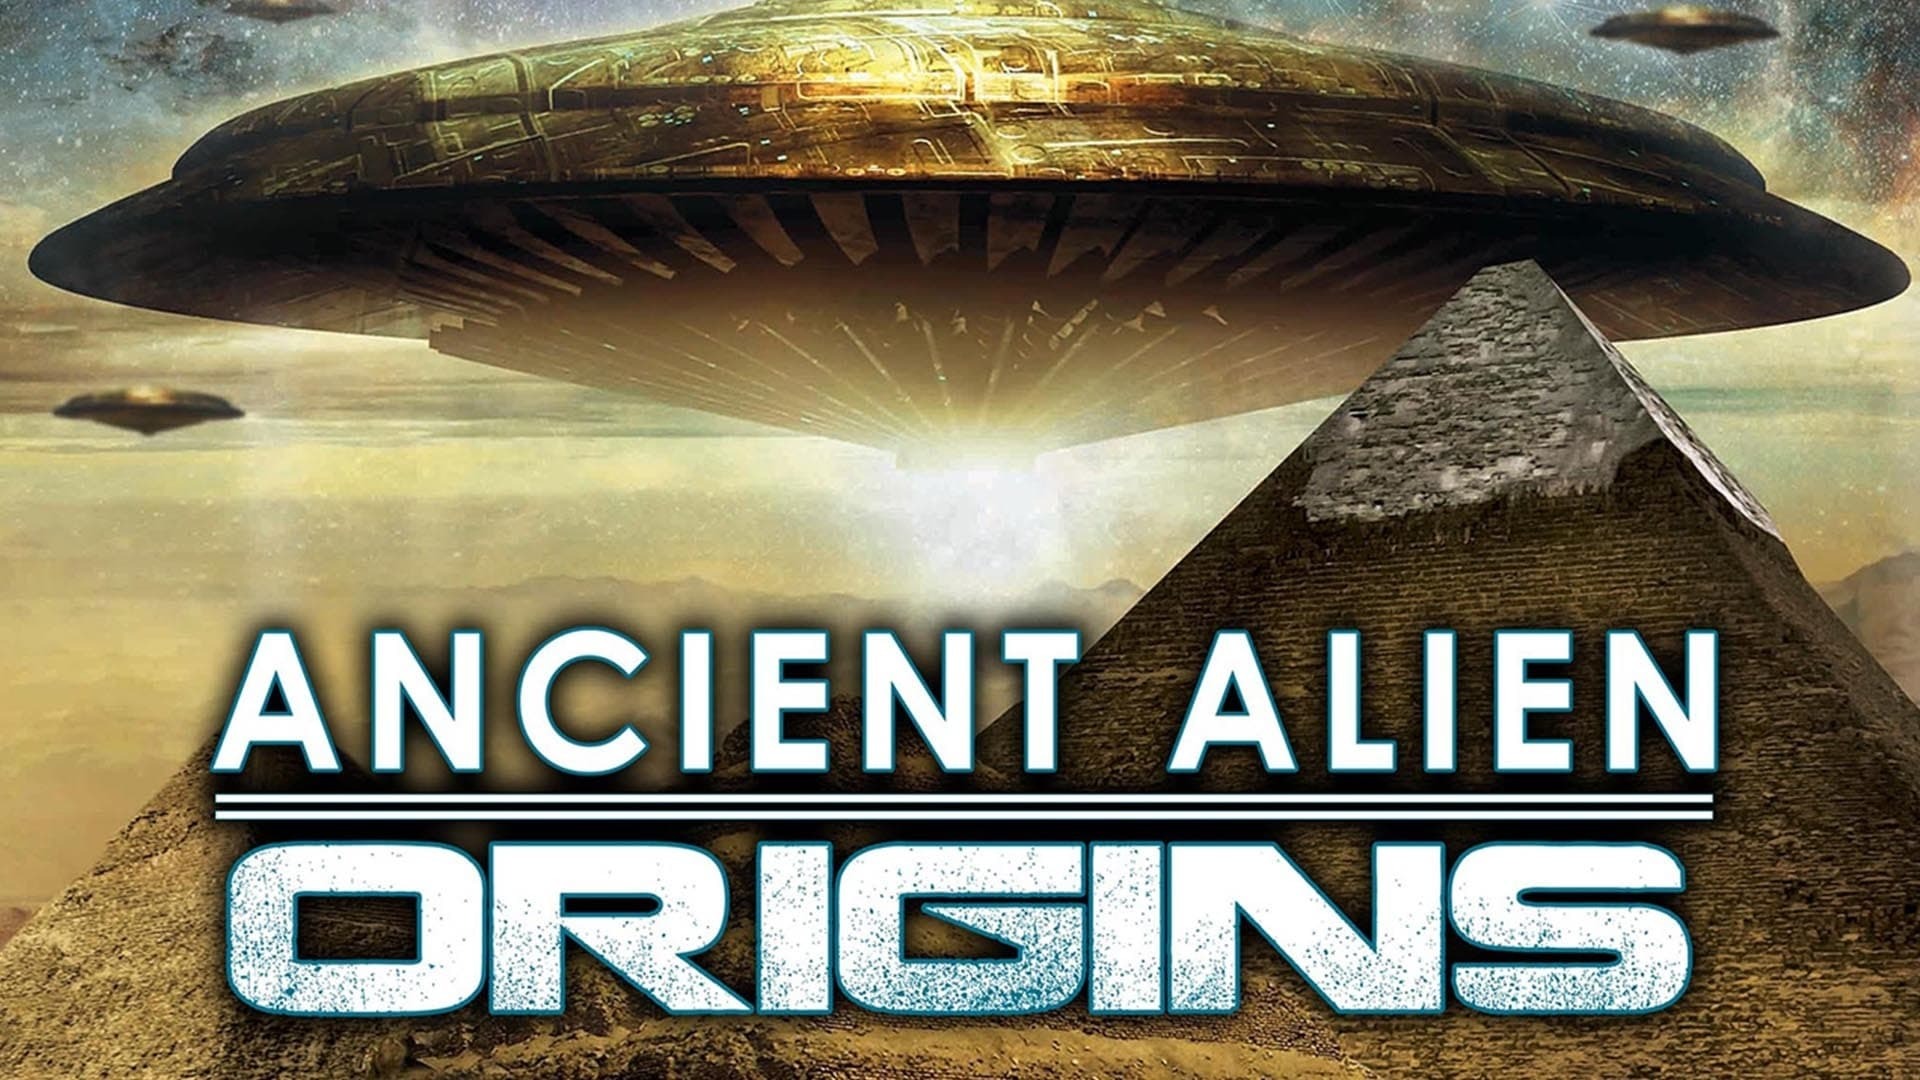 უძველესი უცხოპლანეტელი: წარმოშობა / Ancient Alien Origins